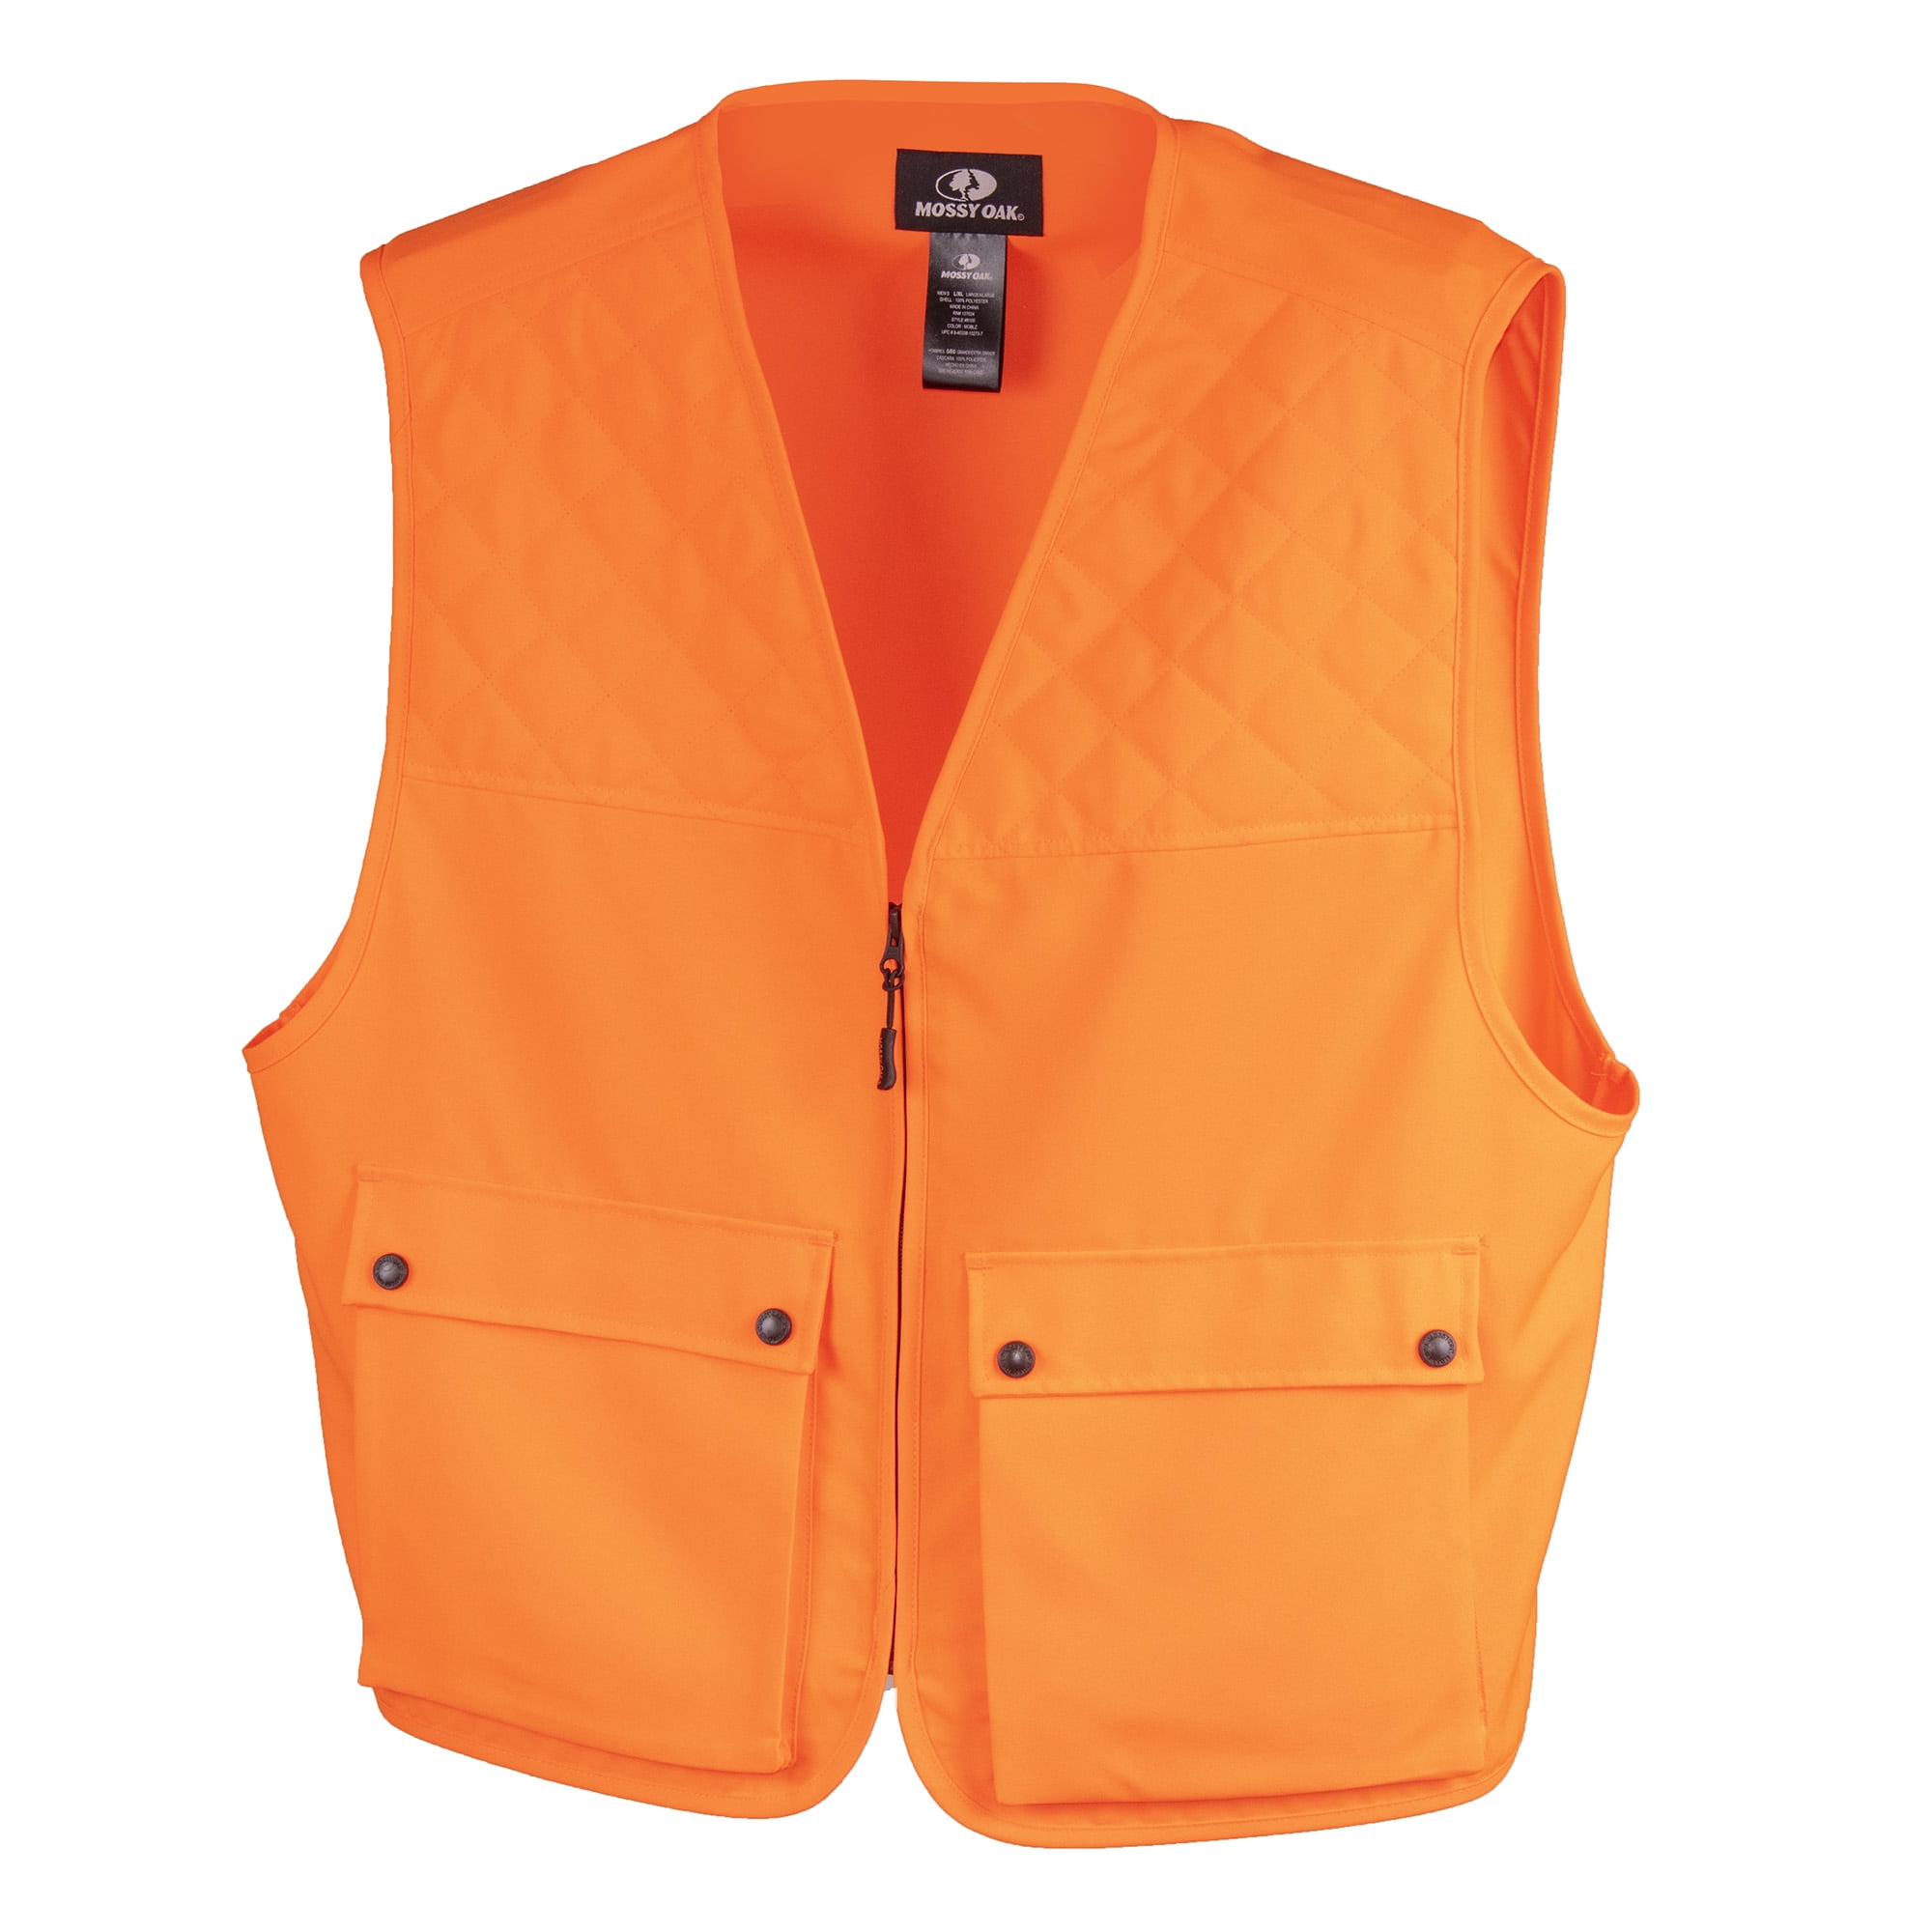 Mossy Oak Orange Hunters Vest Size XL/2XL 